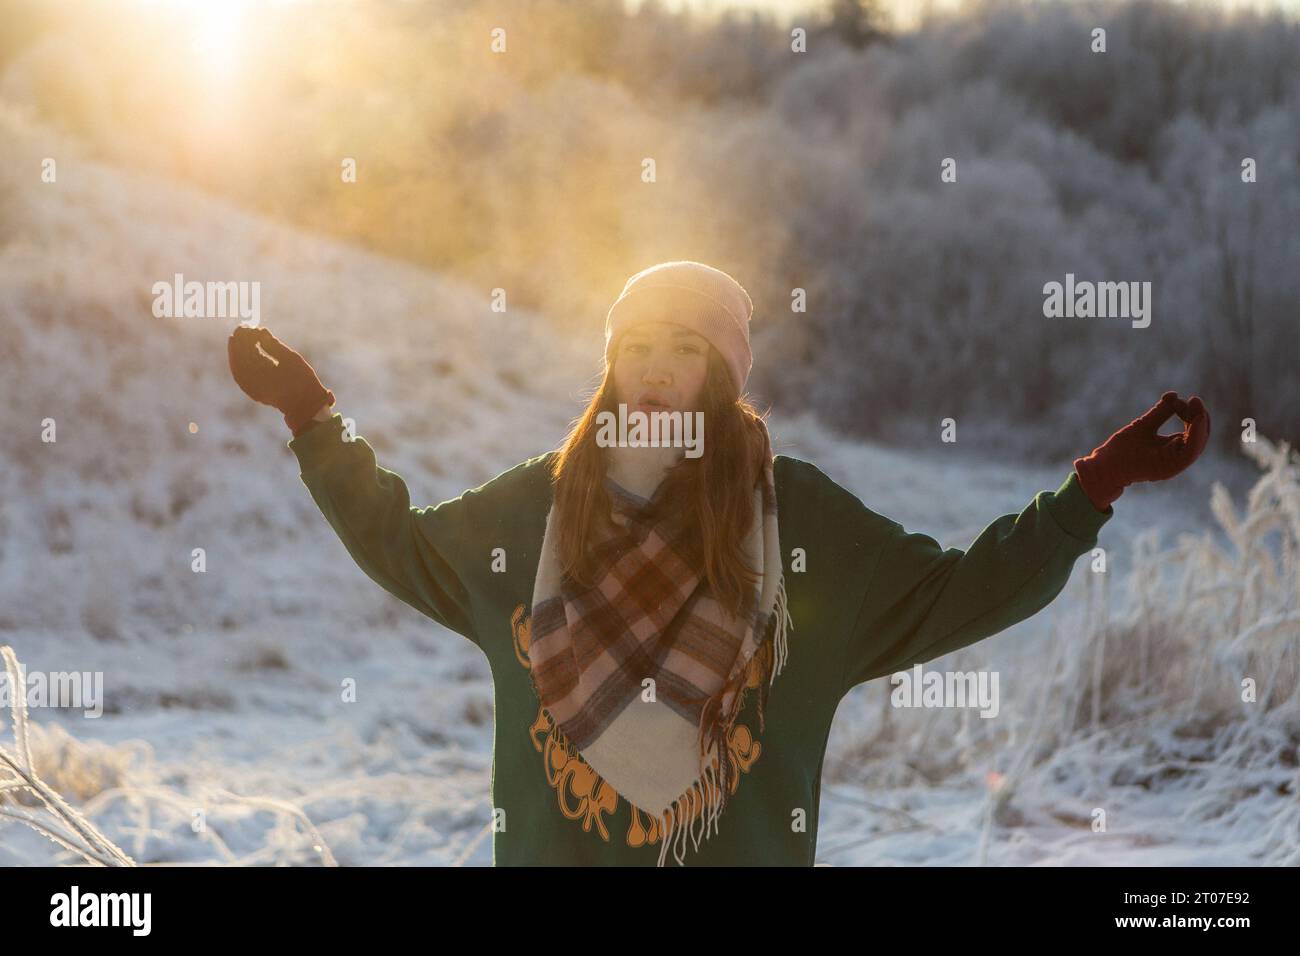 Porträt des glücklichen schönen Mädchens, der jungen freudigen positiven Frau, die mit Schnee, Schneeflocken, Spaß im Freien in Winterkleidung, Hut und Schal spielt, lächelnd. Wintersaison, Wetter. Hochwertige Fotos Stockfoto